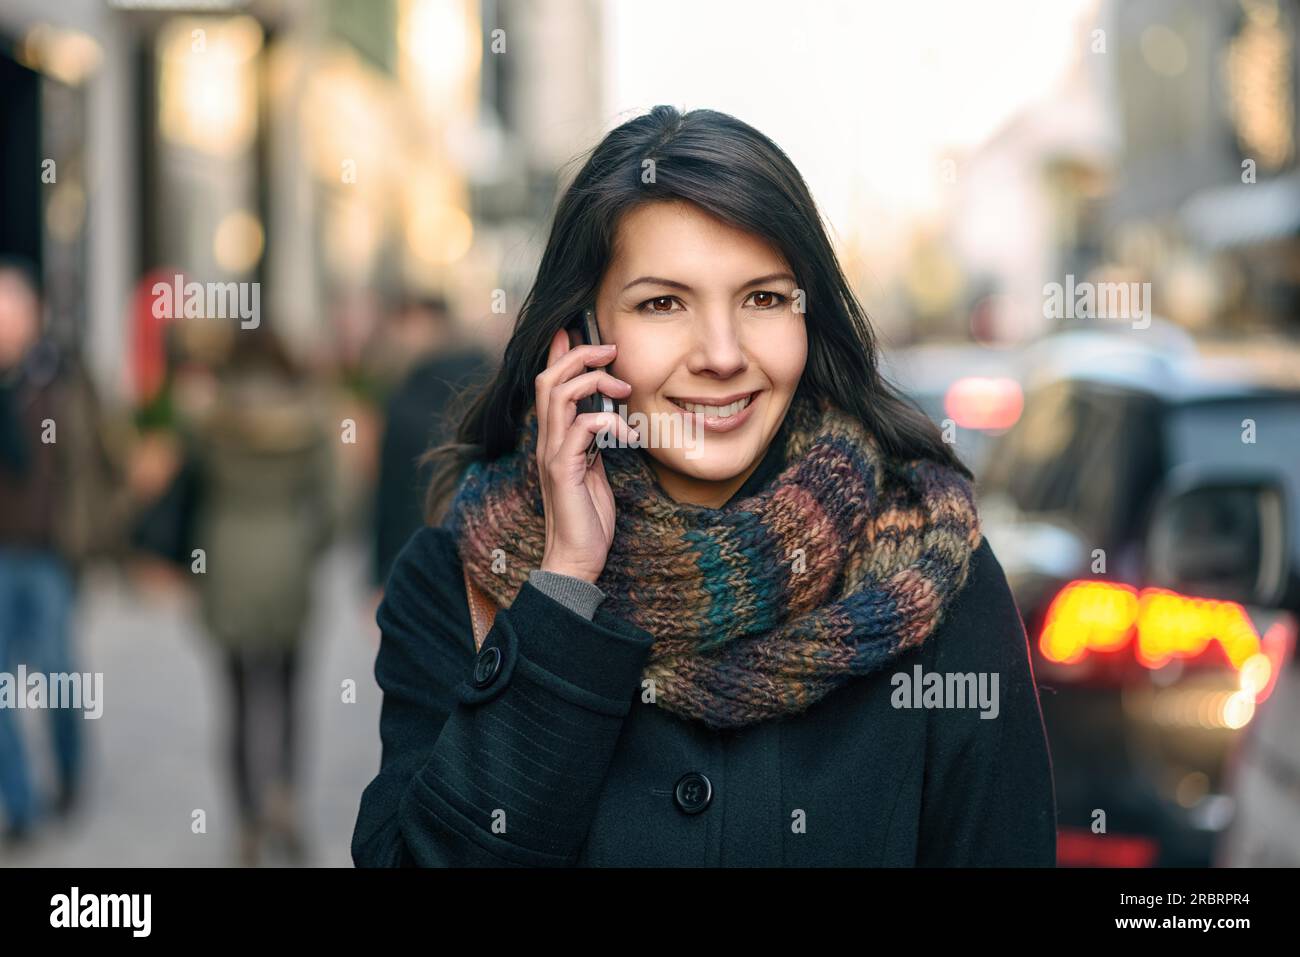 Lächelnde junge Frau im Herbst Mode telefonieren während des Gehens in der Stadt Stockfoto